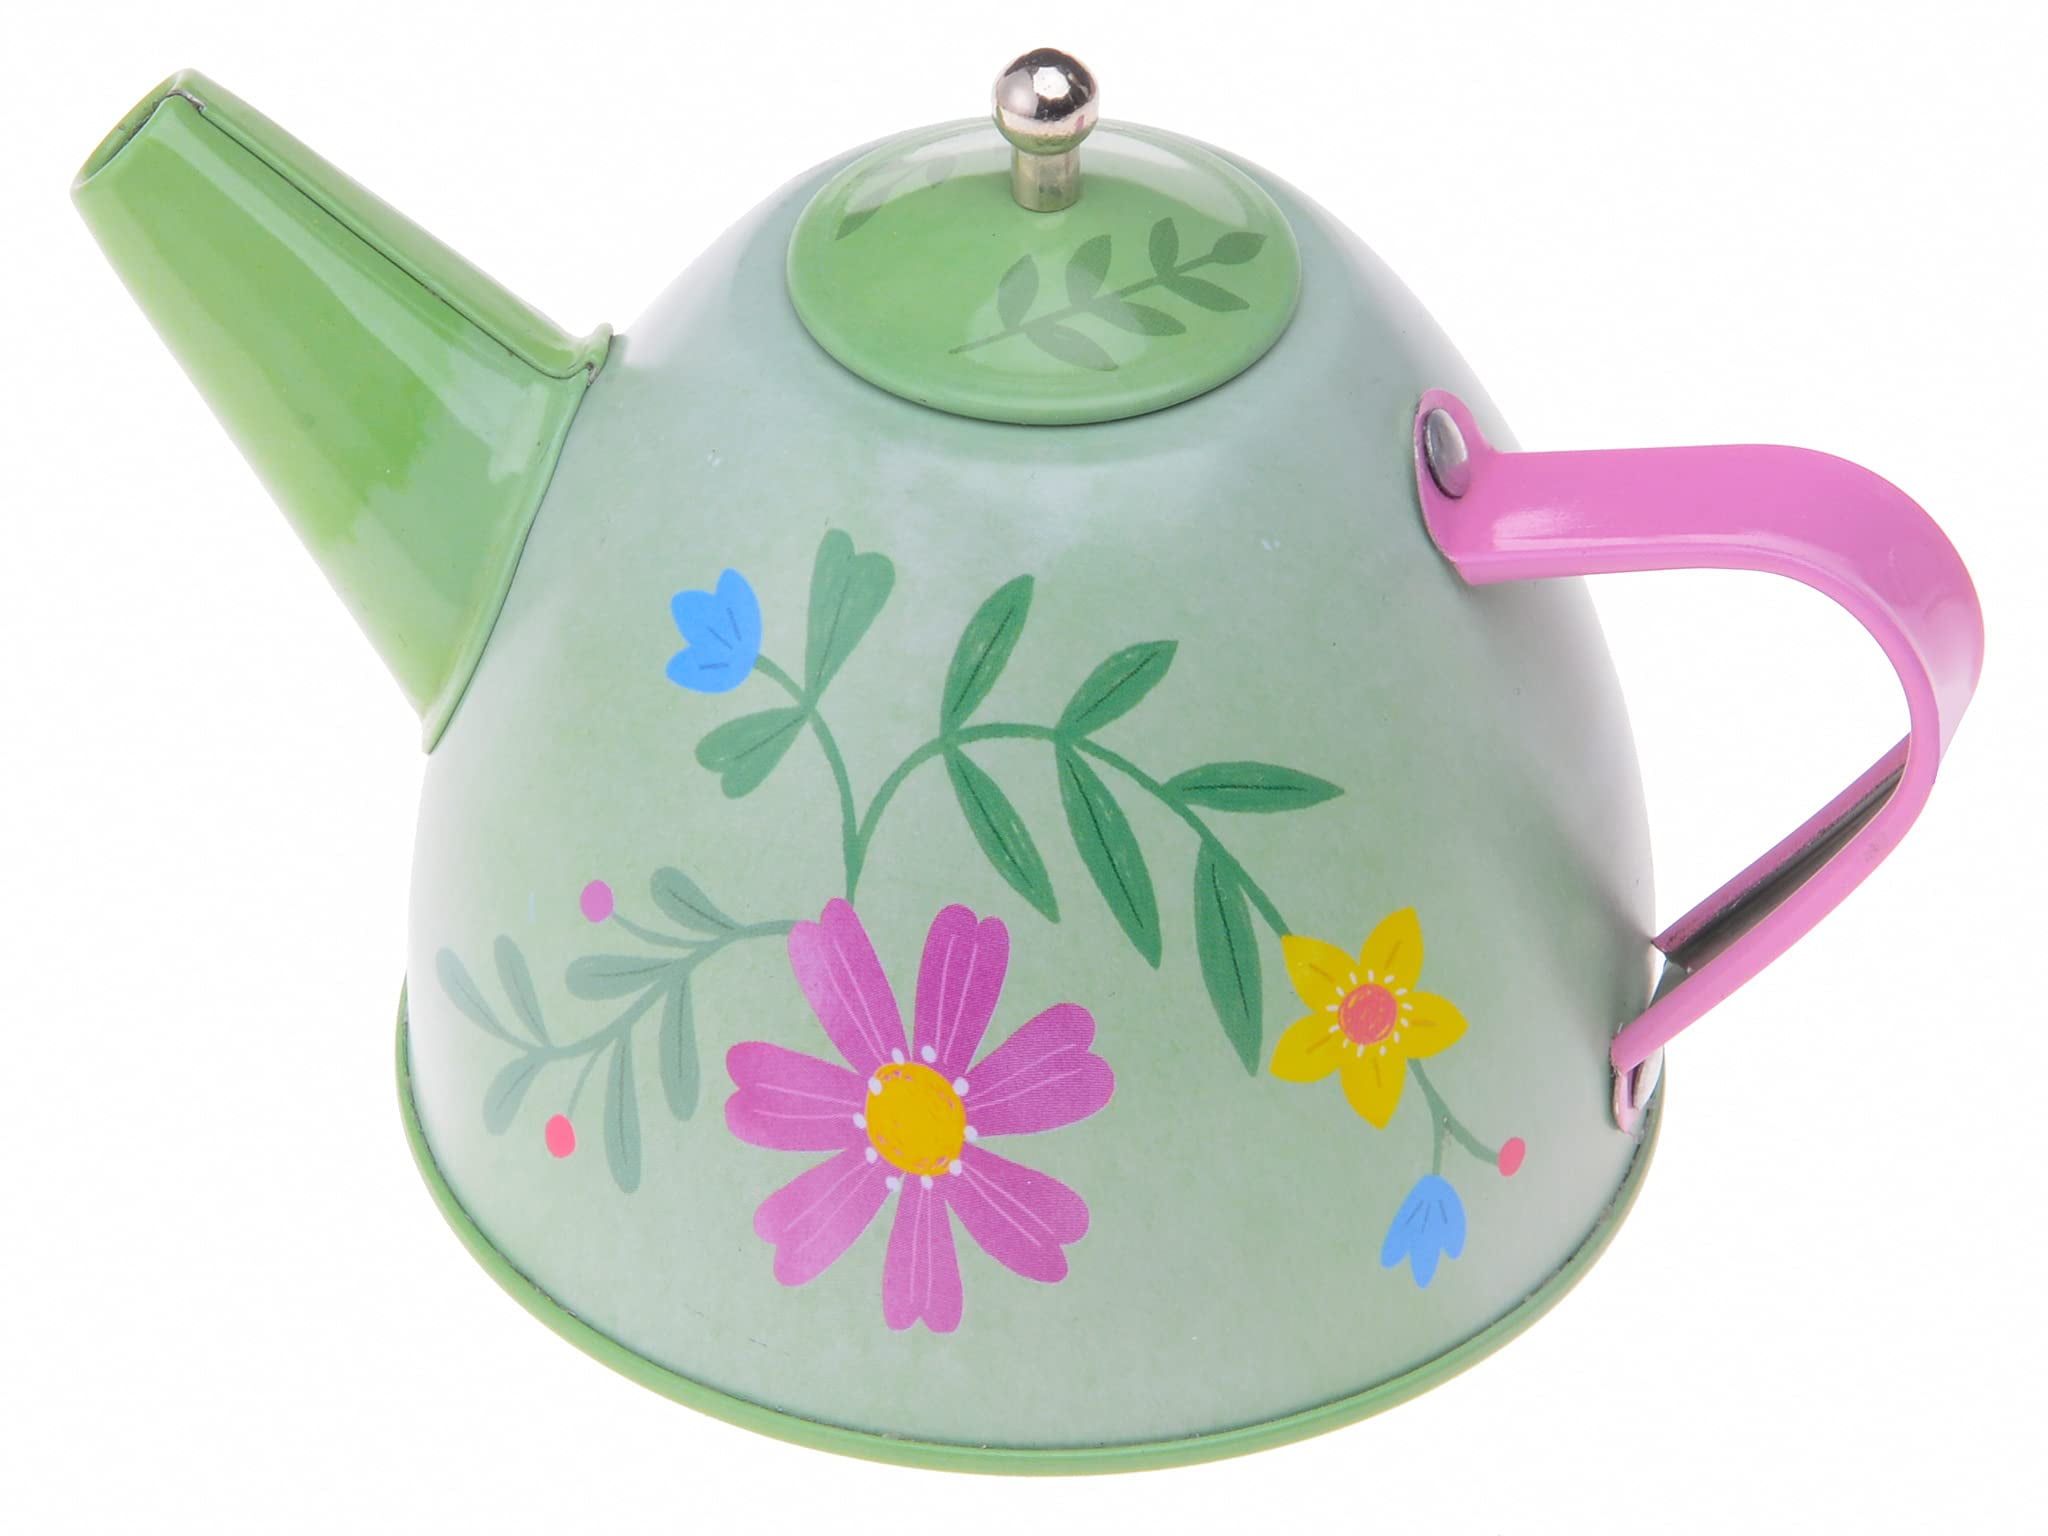 Pottery Barn Kids Disney Princess Tin Tea Set